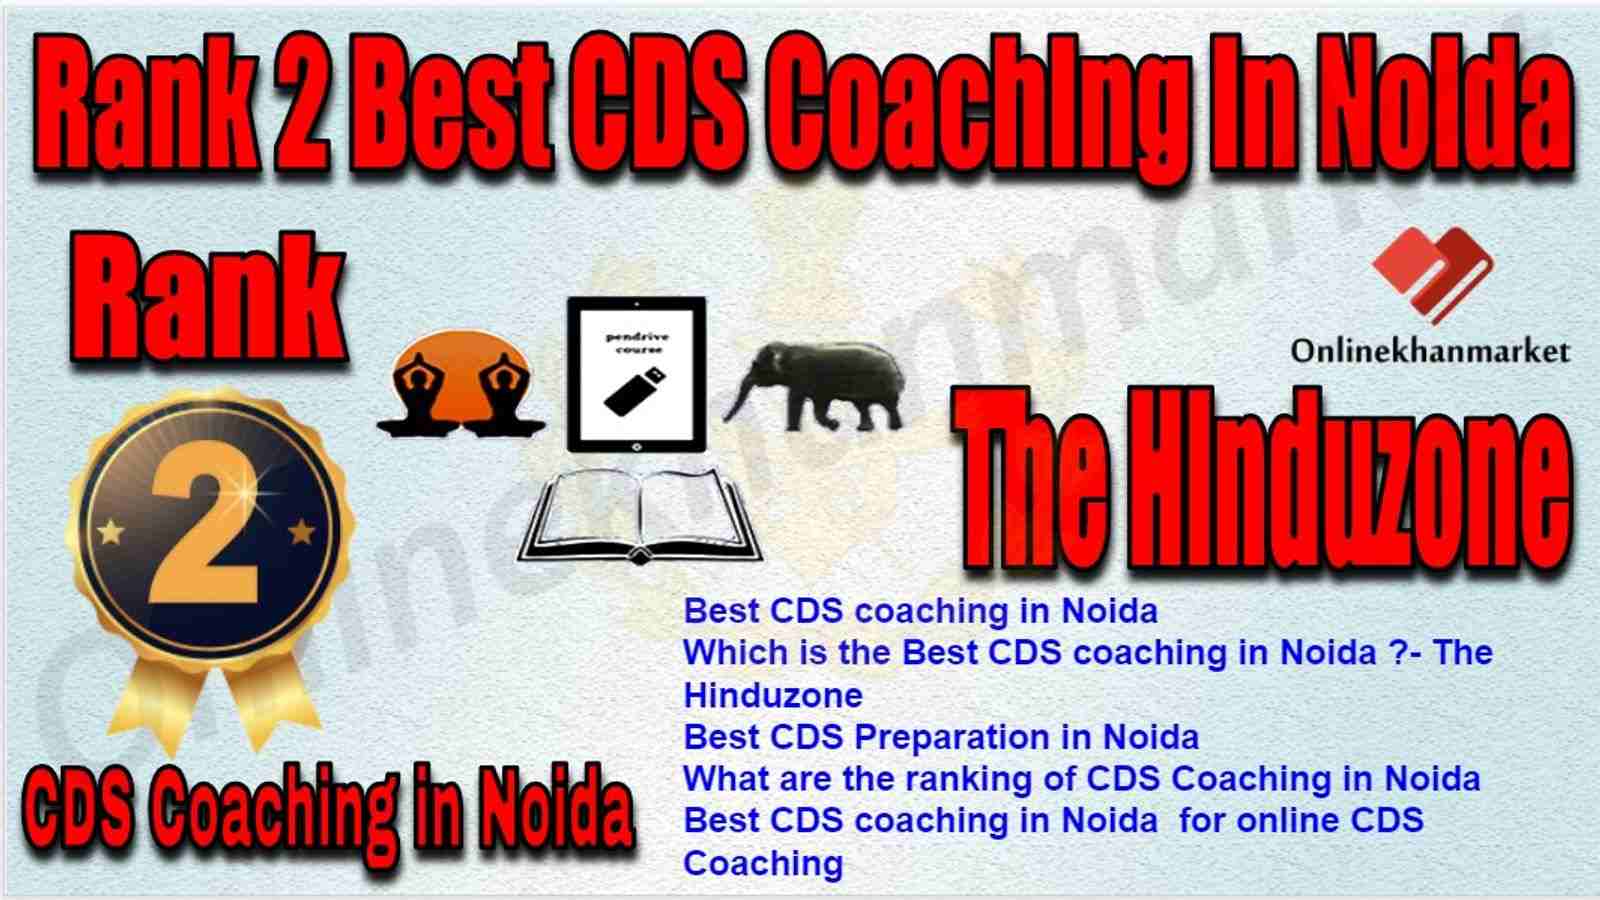 Rank 2 Best CDS Coaching in Noida